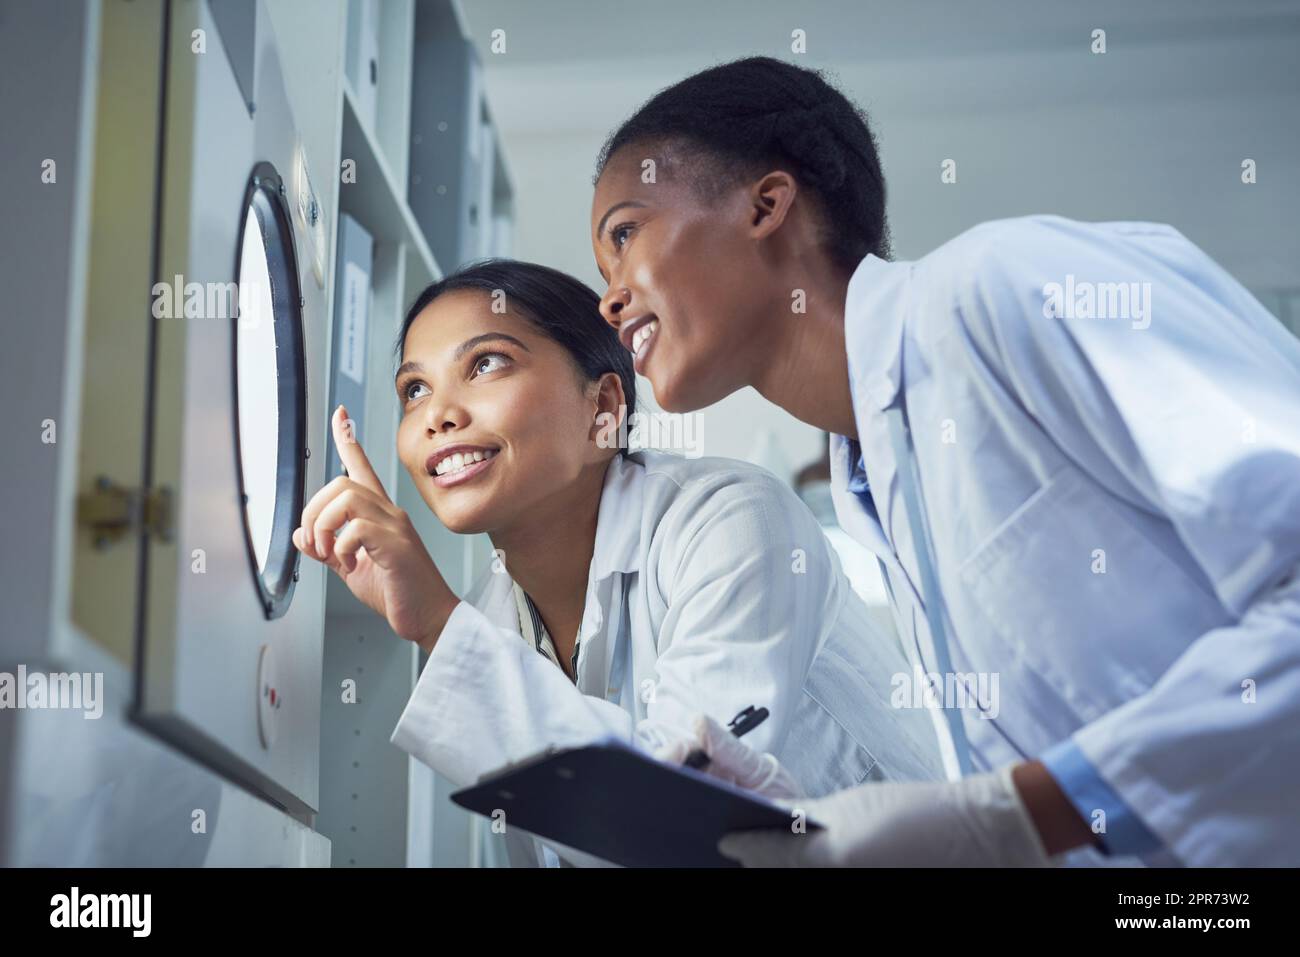 La scienza illumina il mondo. Foto di due scienziati che lavorano in un laboratorio. Foto Stock